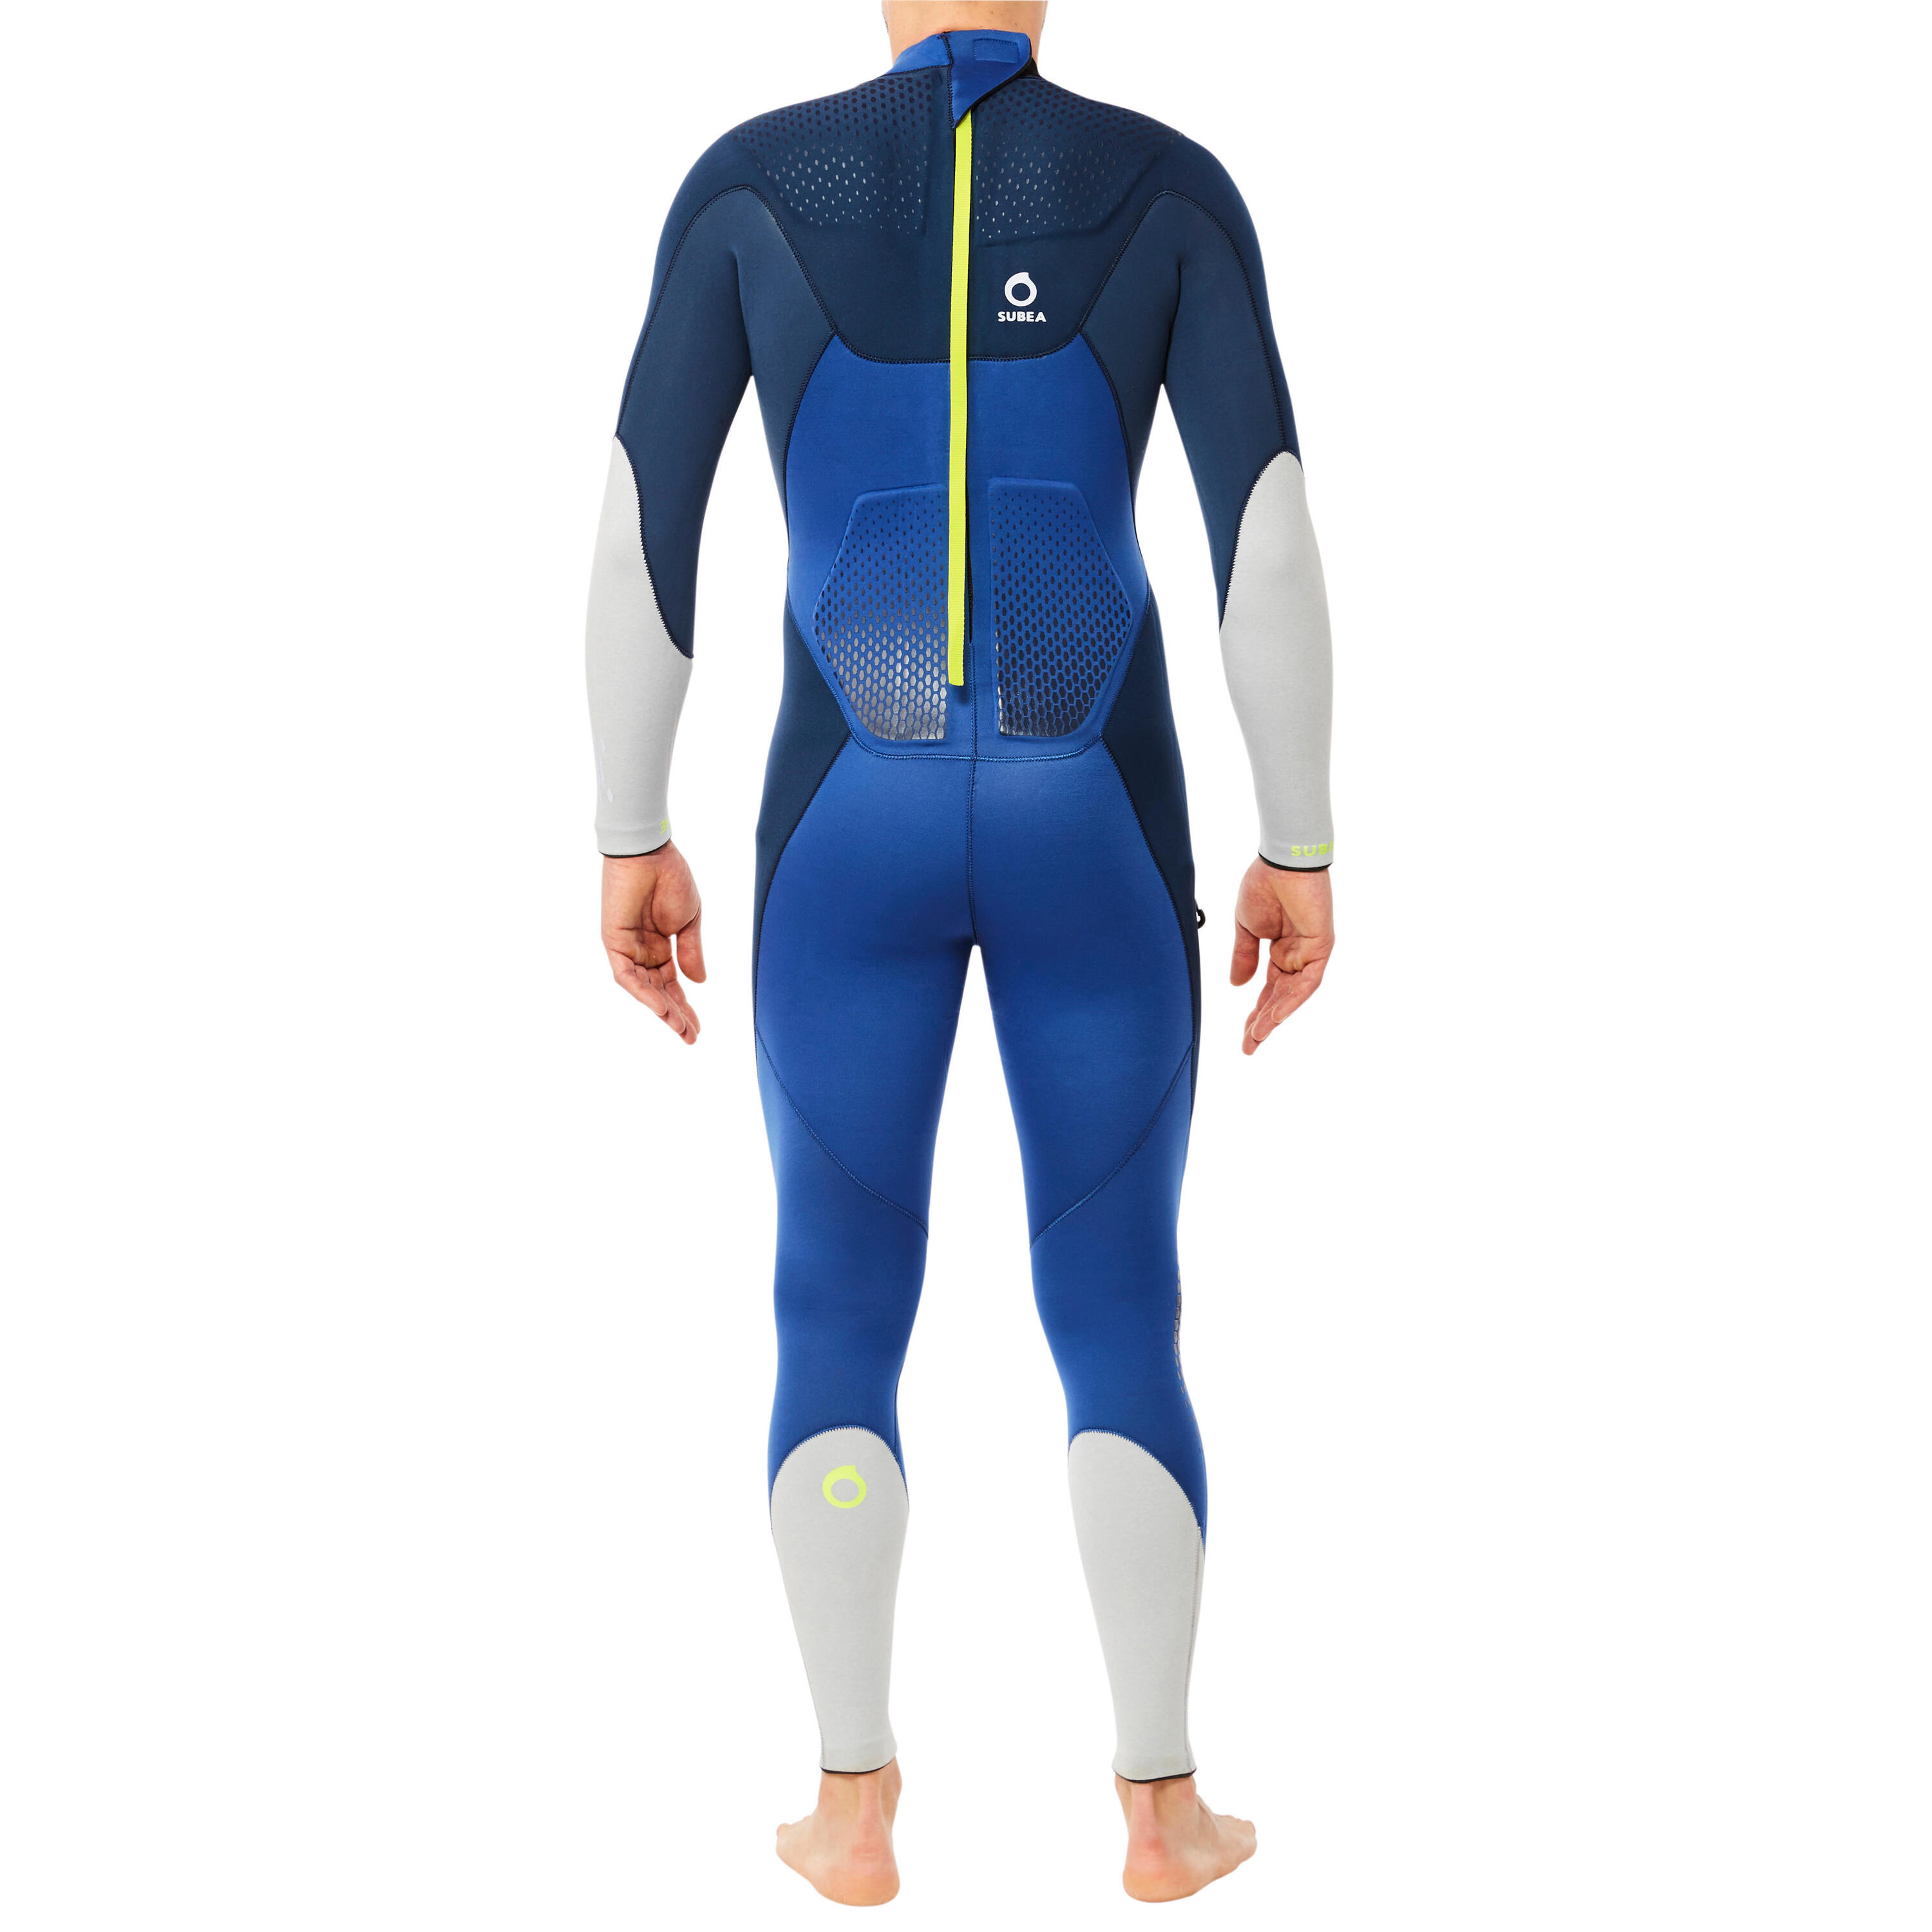 Men's diving wetsuit 3 mm neoprene SCD 900 turquin and overseas blue 4/10